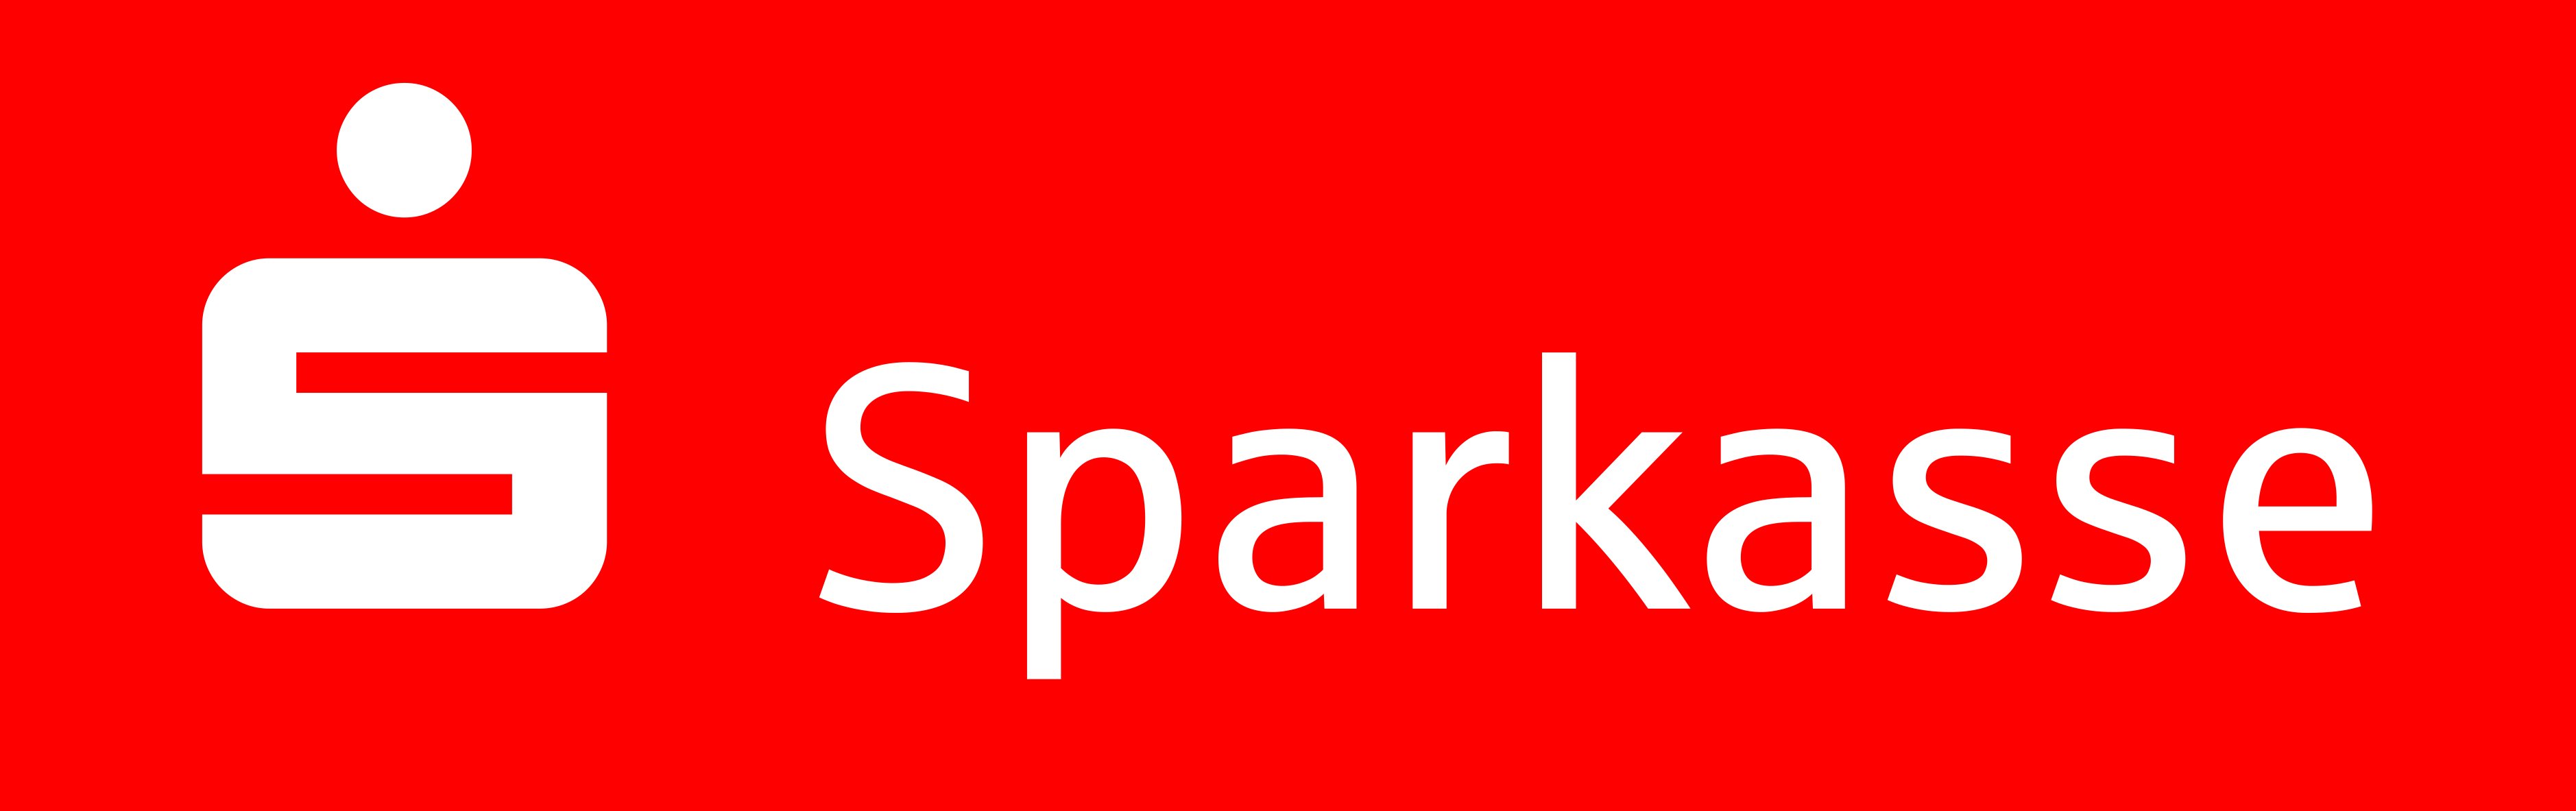 Sparkasse Erlangen Logo